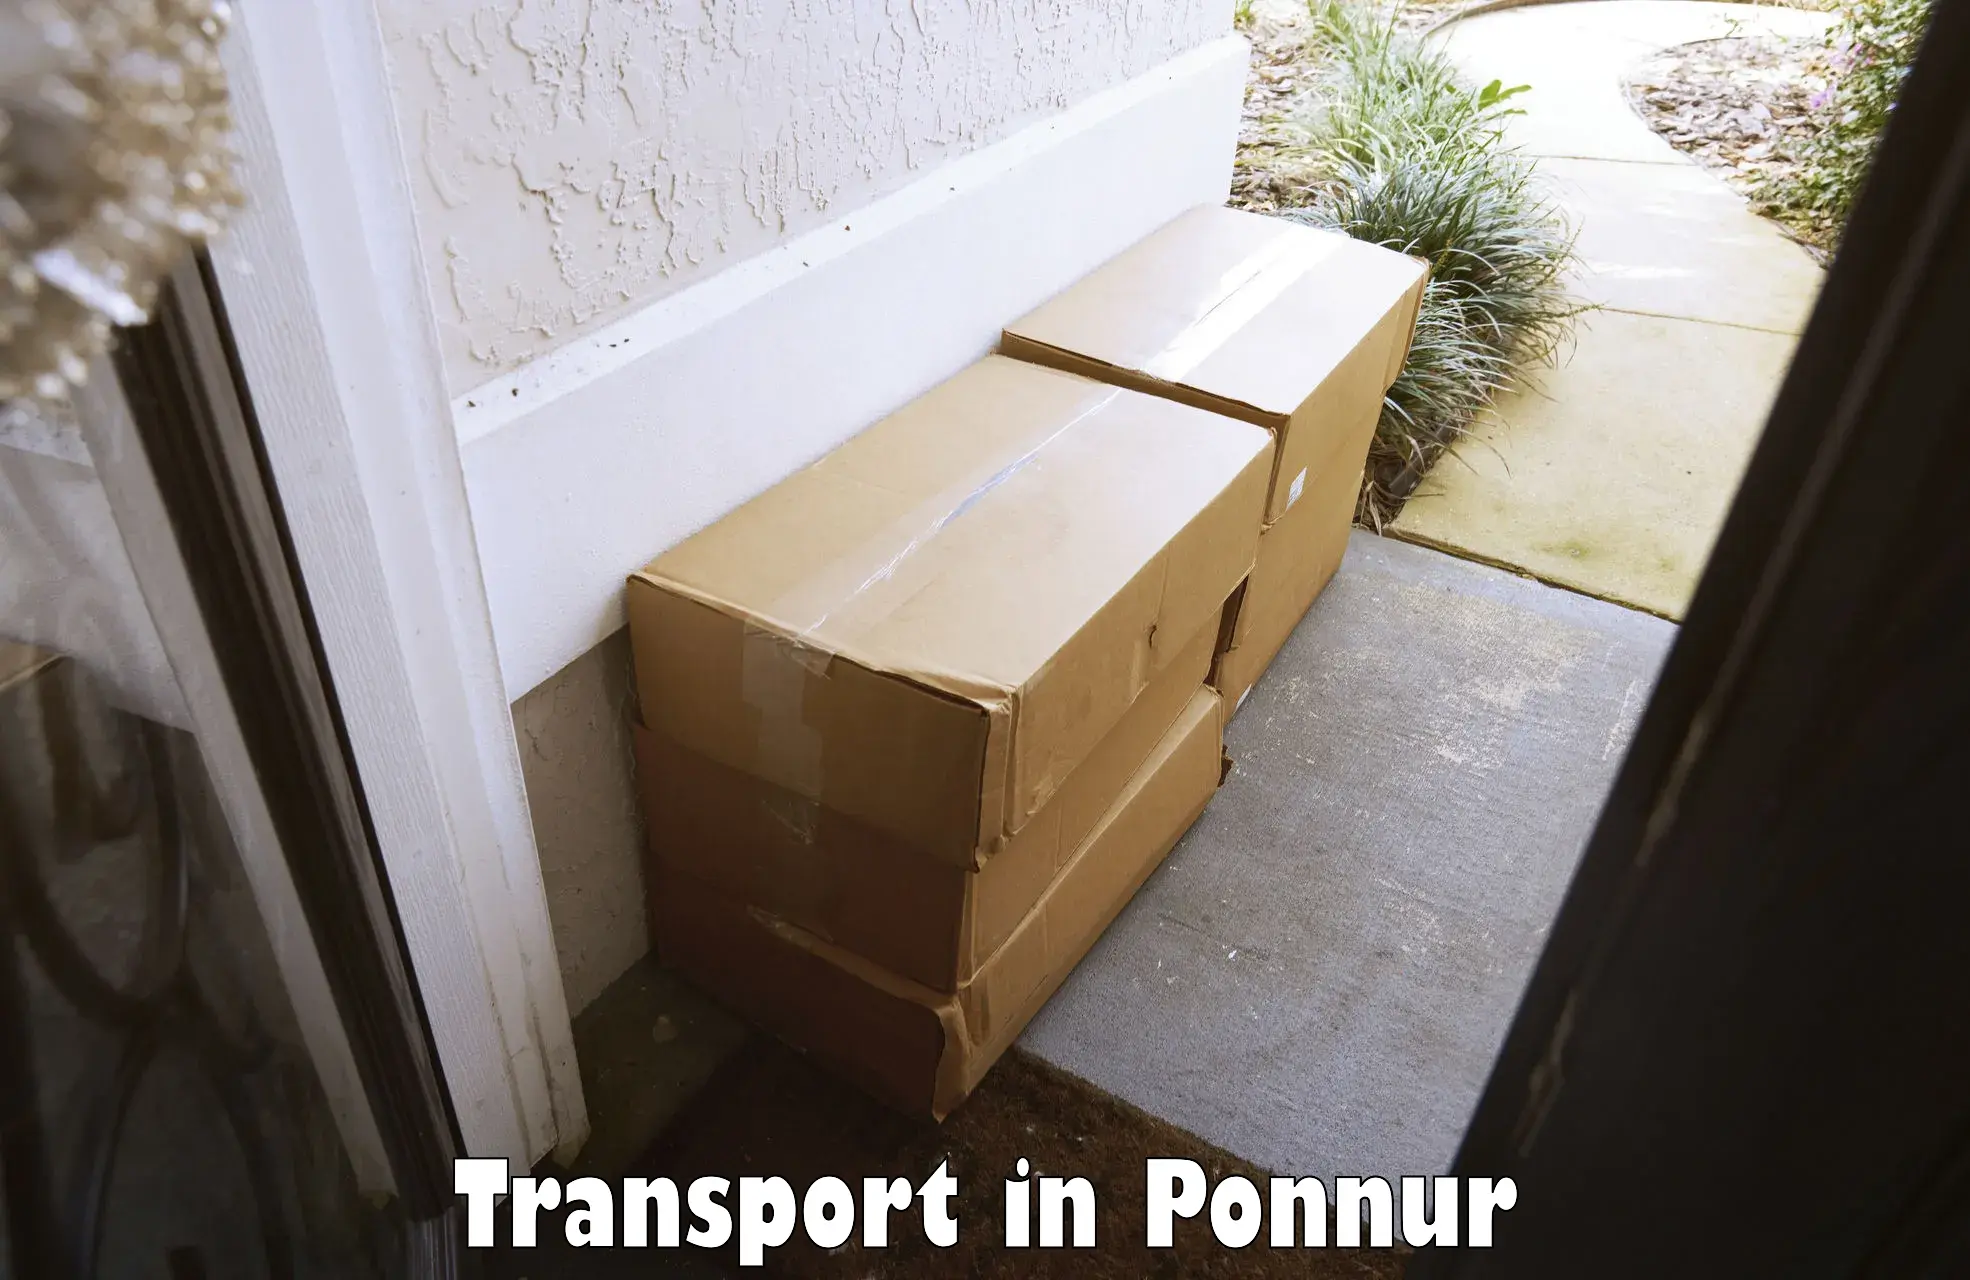 Transport services in Ponnur